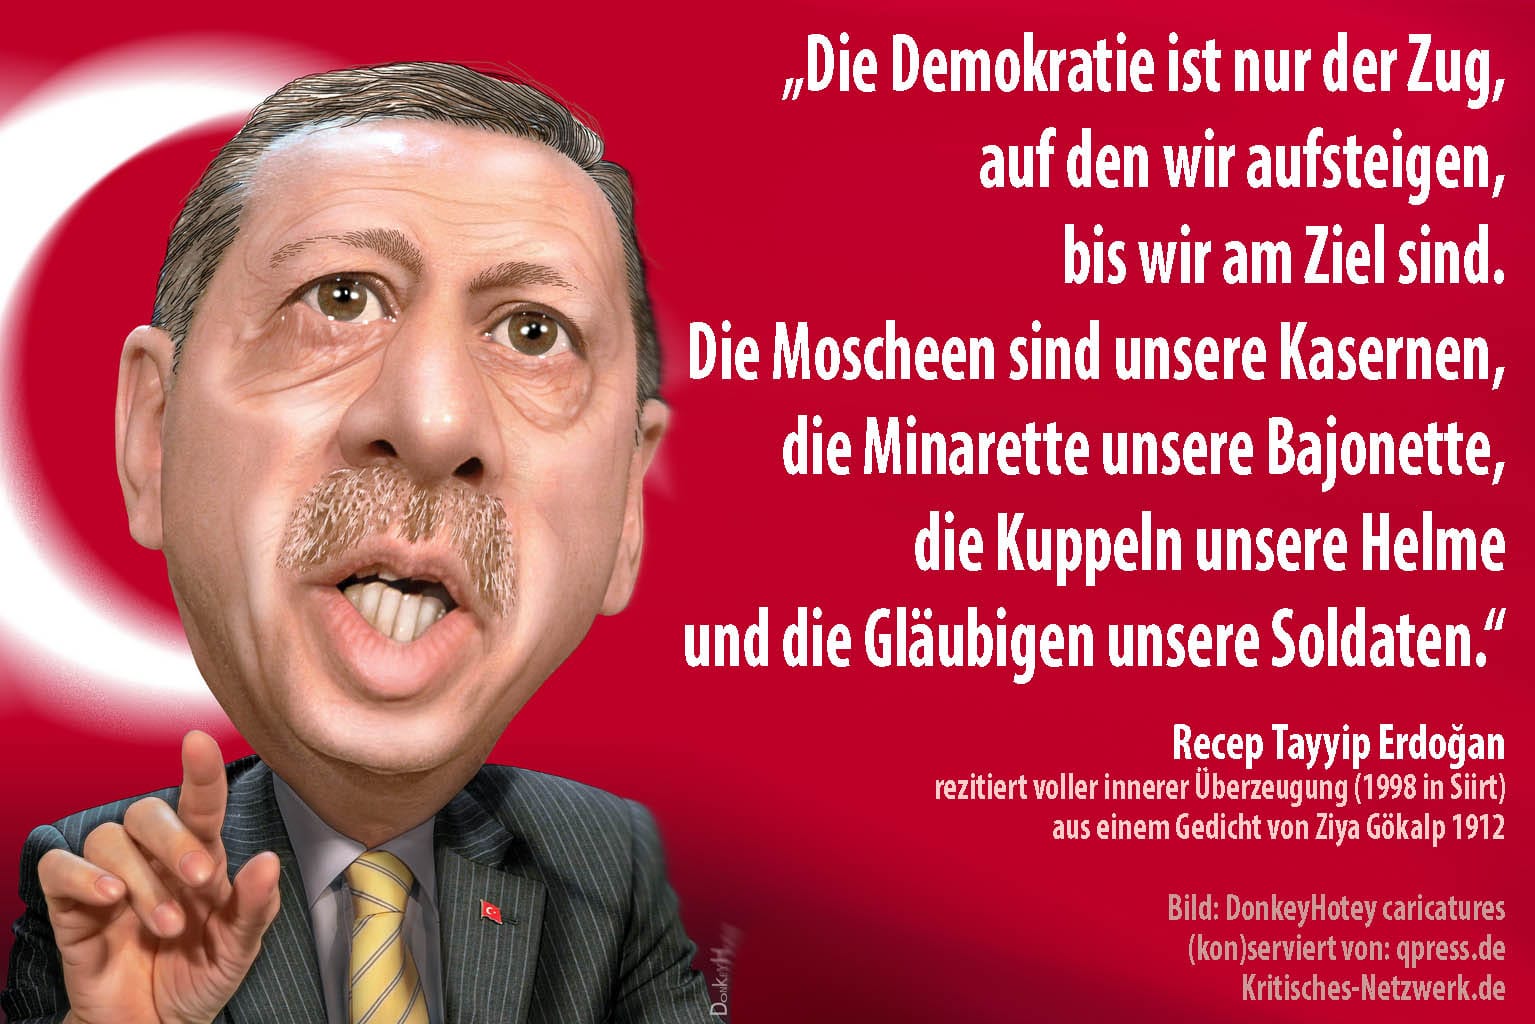 Recep_Tayyip_Erdogan_Turkey_Tuerkei_prime_minister_Menschenrechte_Frauenrechte_Adalet_ve_Kalkınma_Partisi_AKP_Todesstrafe_Kurden_Bozkurt_PKK_NATO_by_DonkeyHotey_caricatures_qp